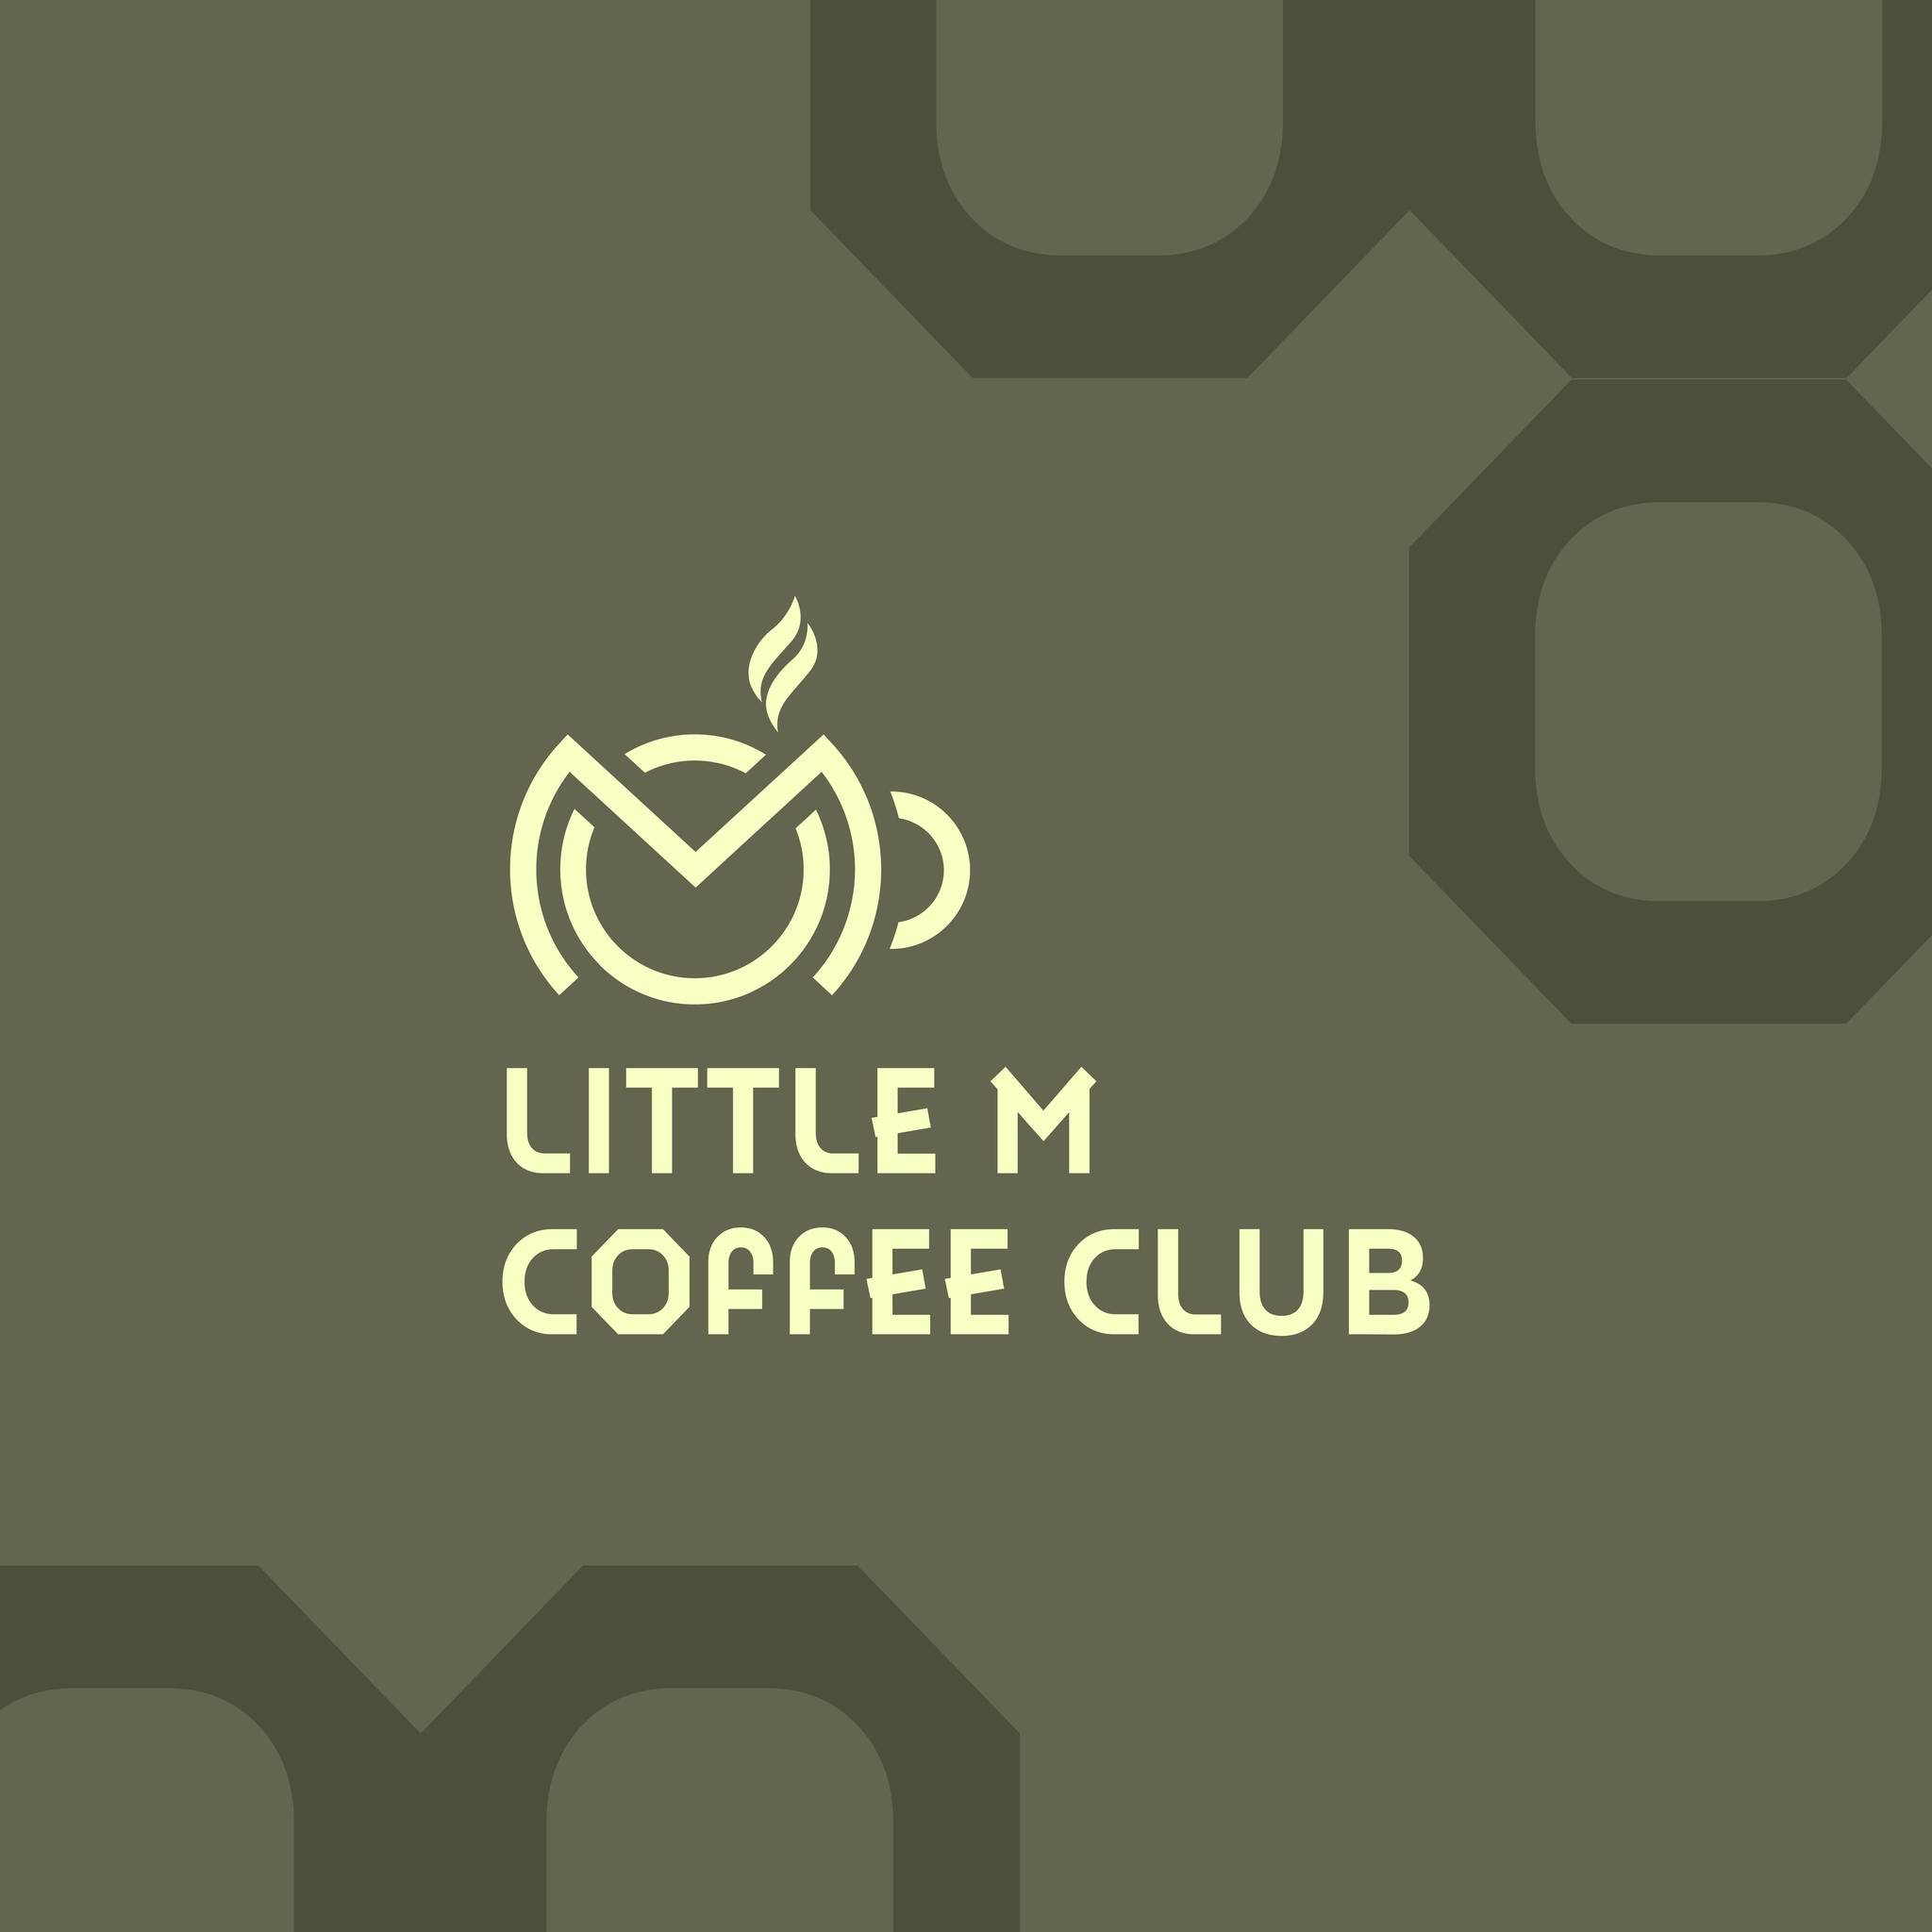 THIẾT KẾ LOGO CÀ PHÊ LITTLE M COFFEE CLUB